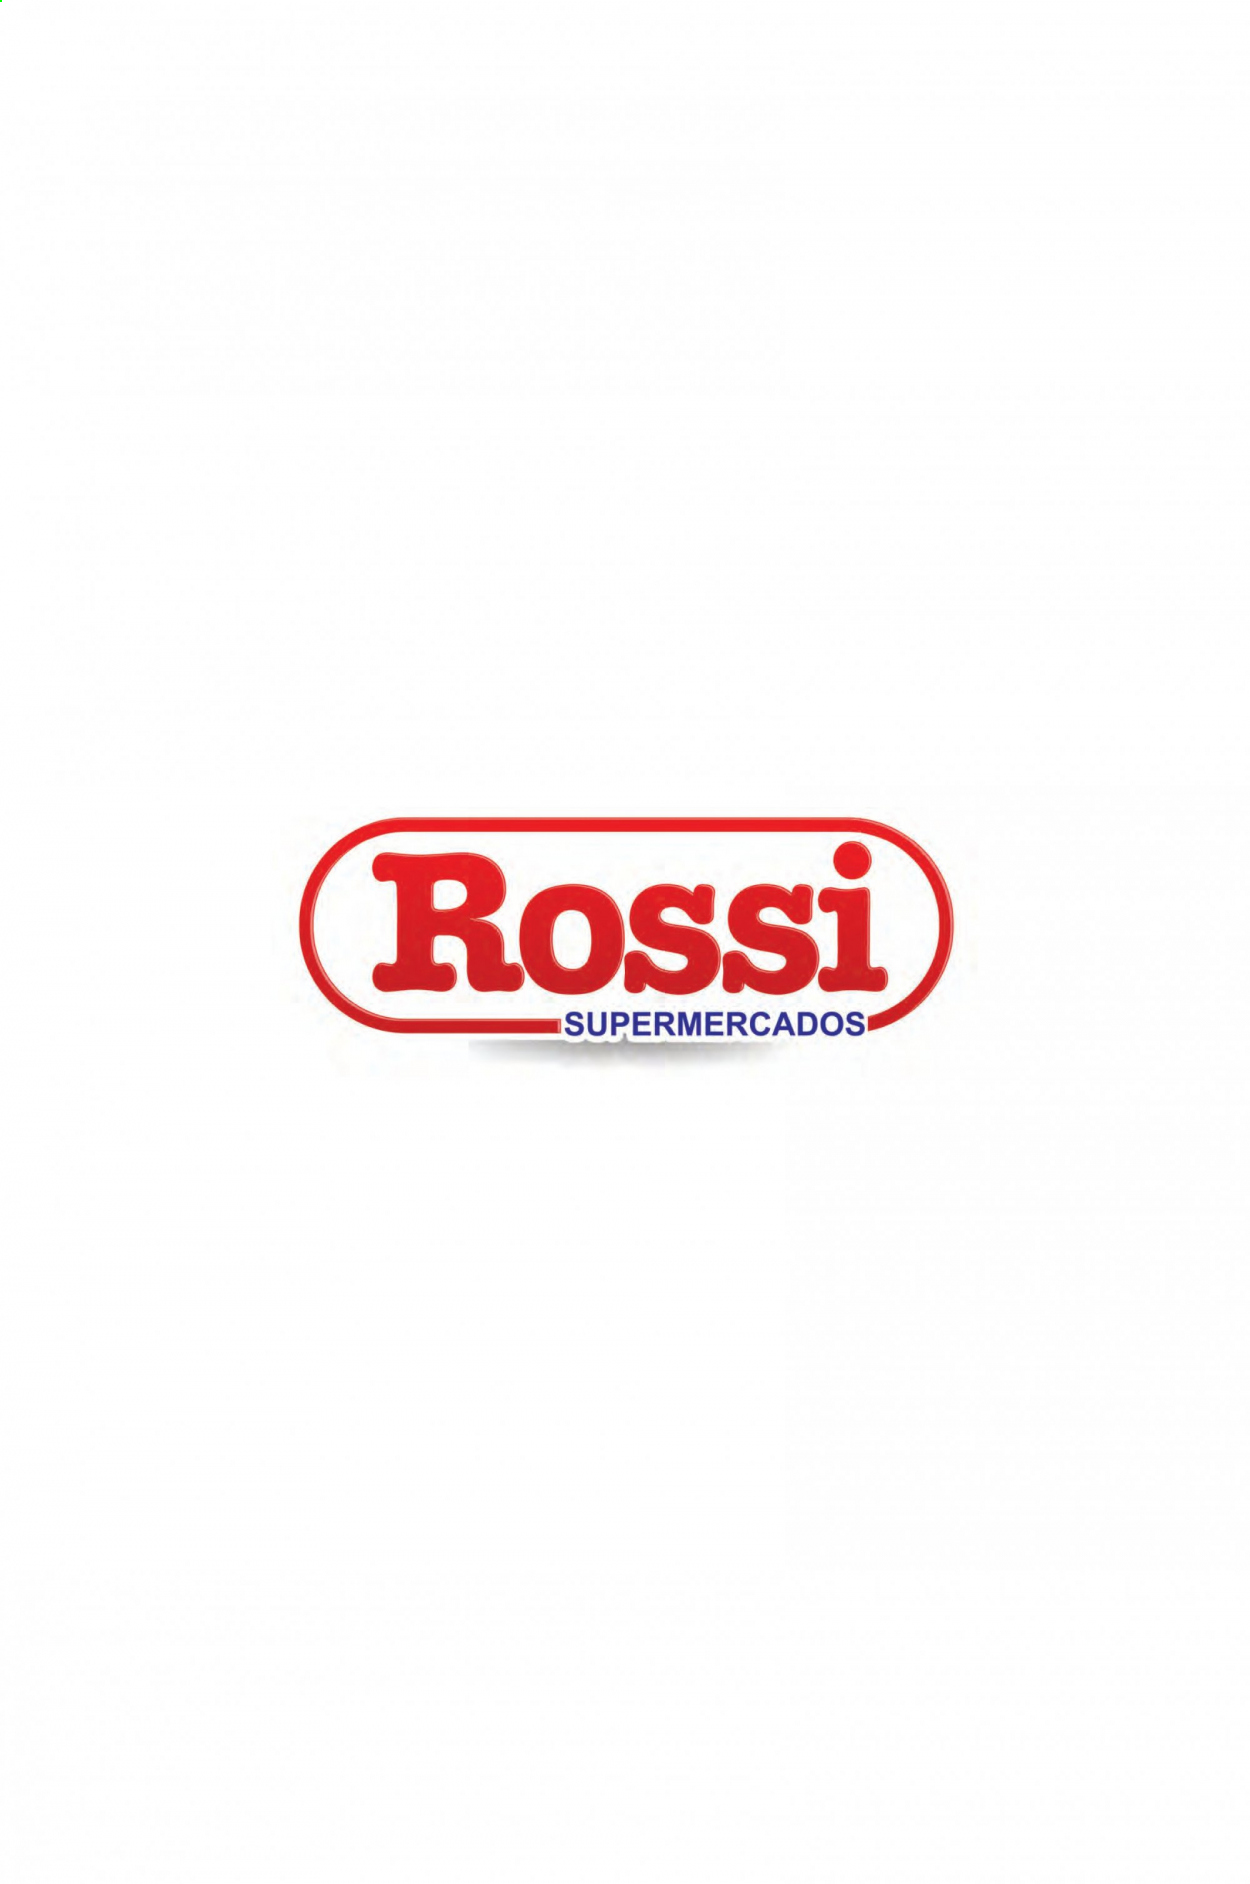 Encarte Rossi Supermercados  - 26.03.2021 - 30.03.2021.